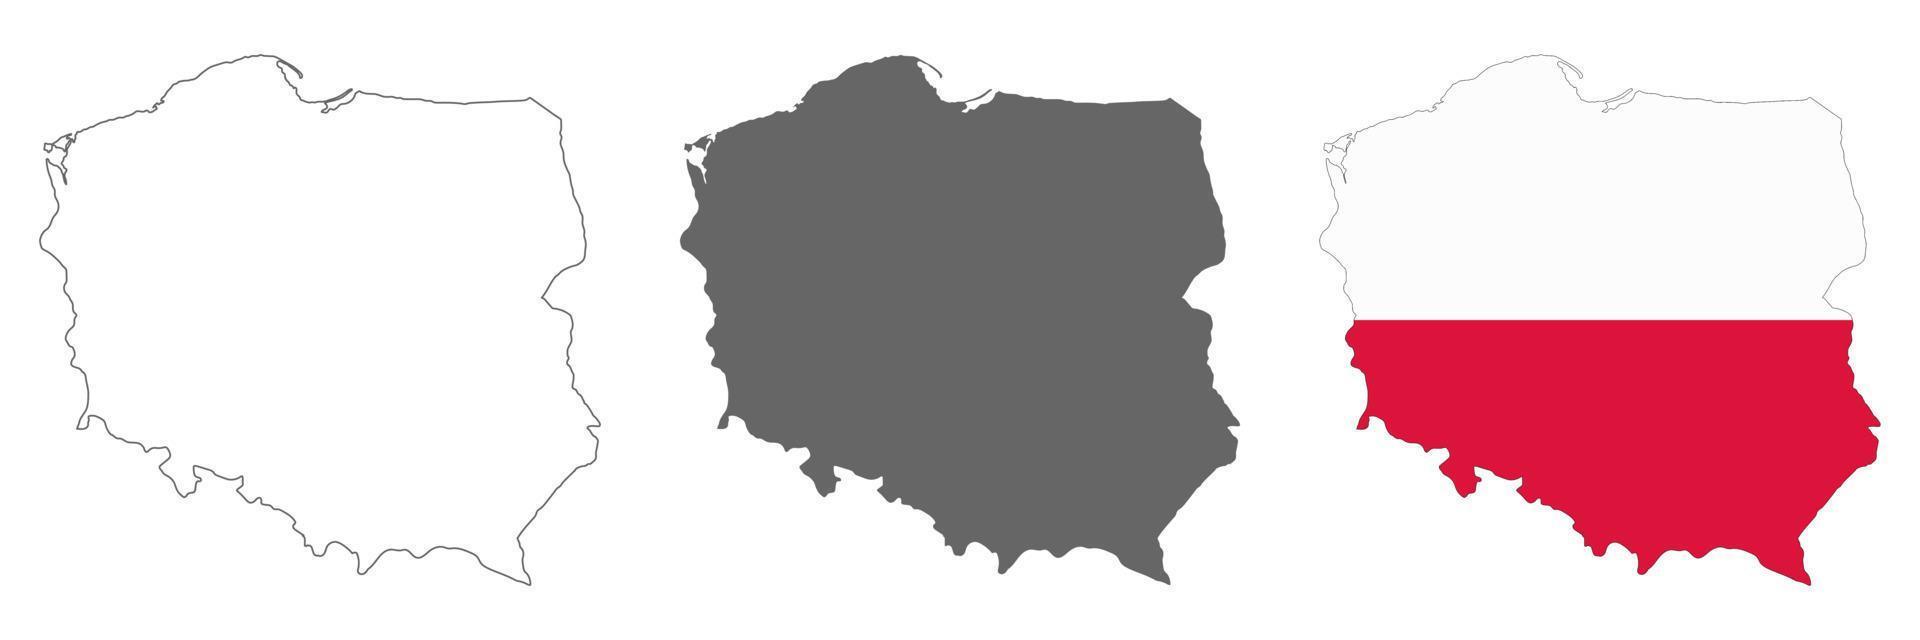 zeer gedetailleerde kaart van Polen met randen geïsoleerd op de achtergrond vector